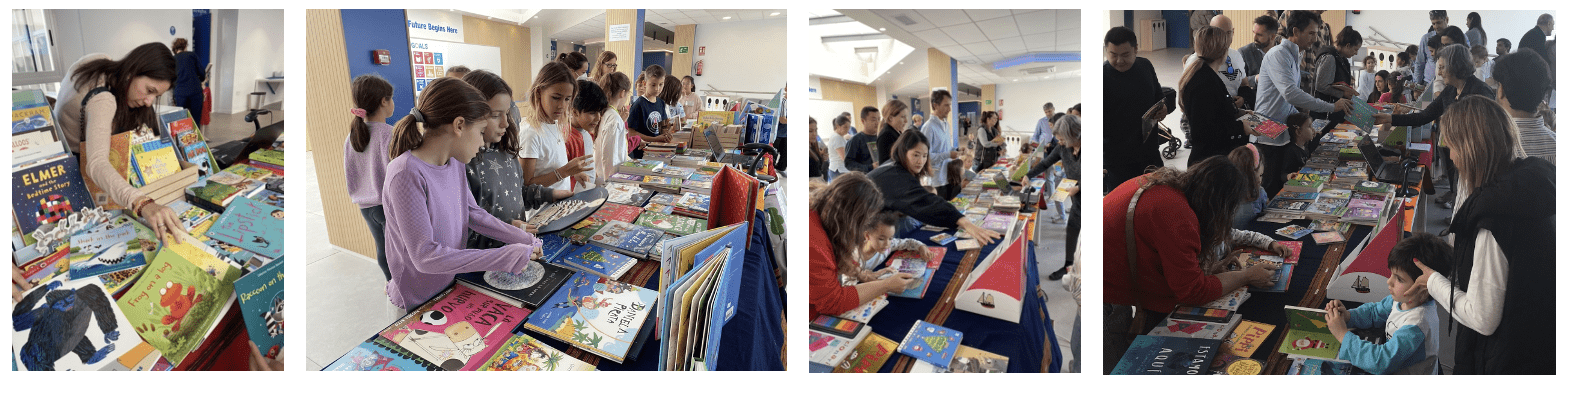 Book Fair. Collage